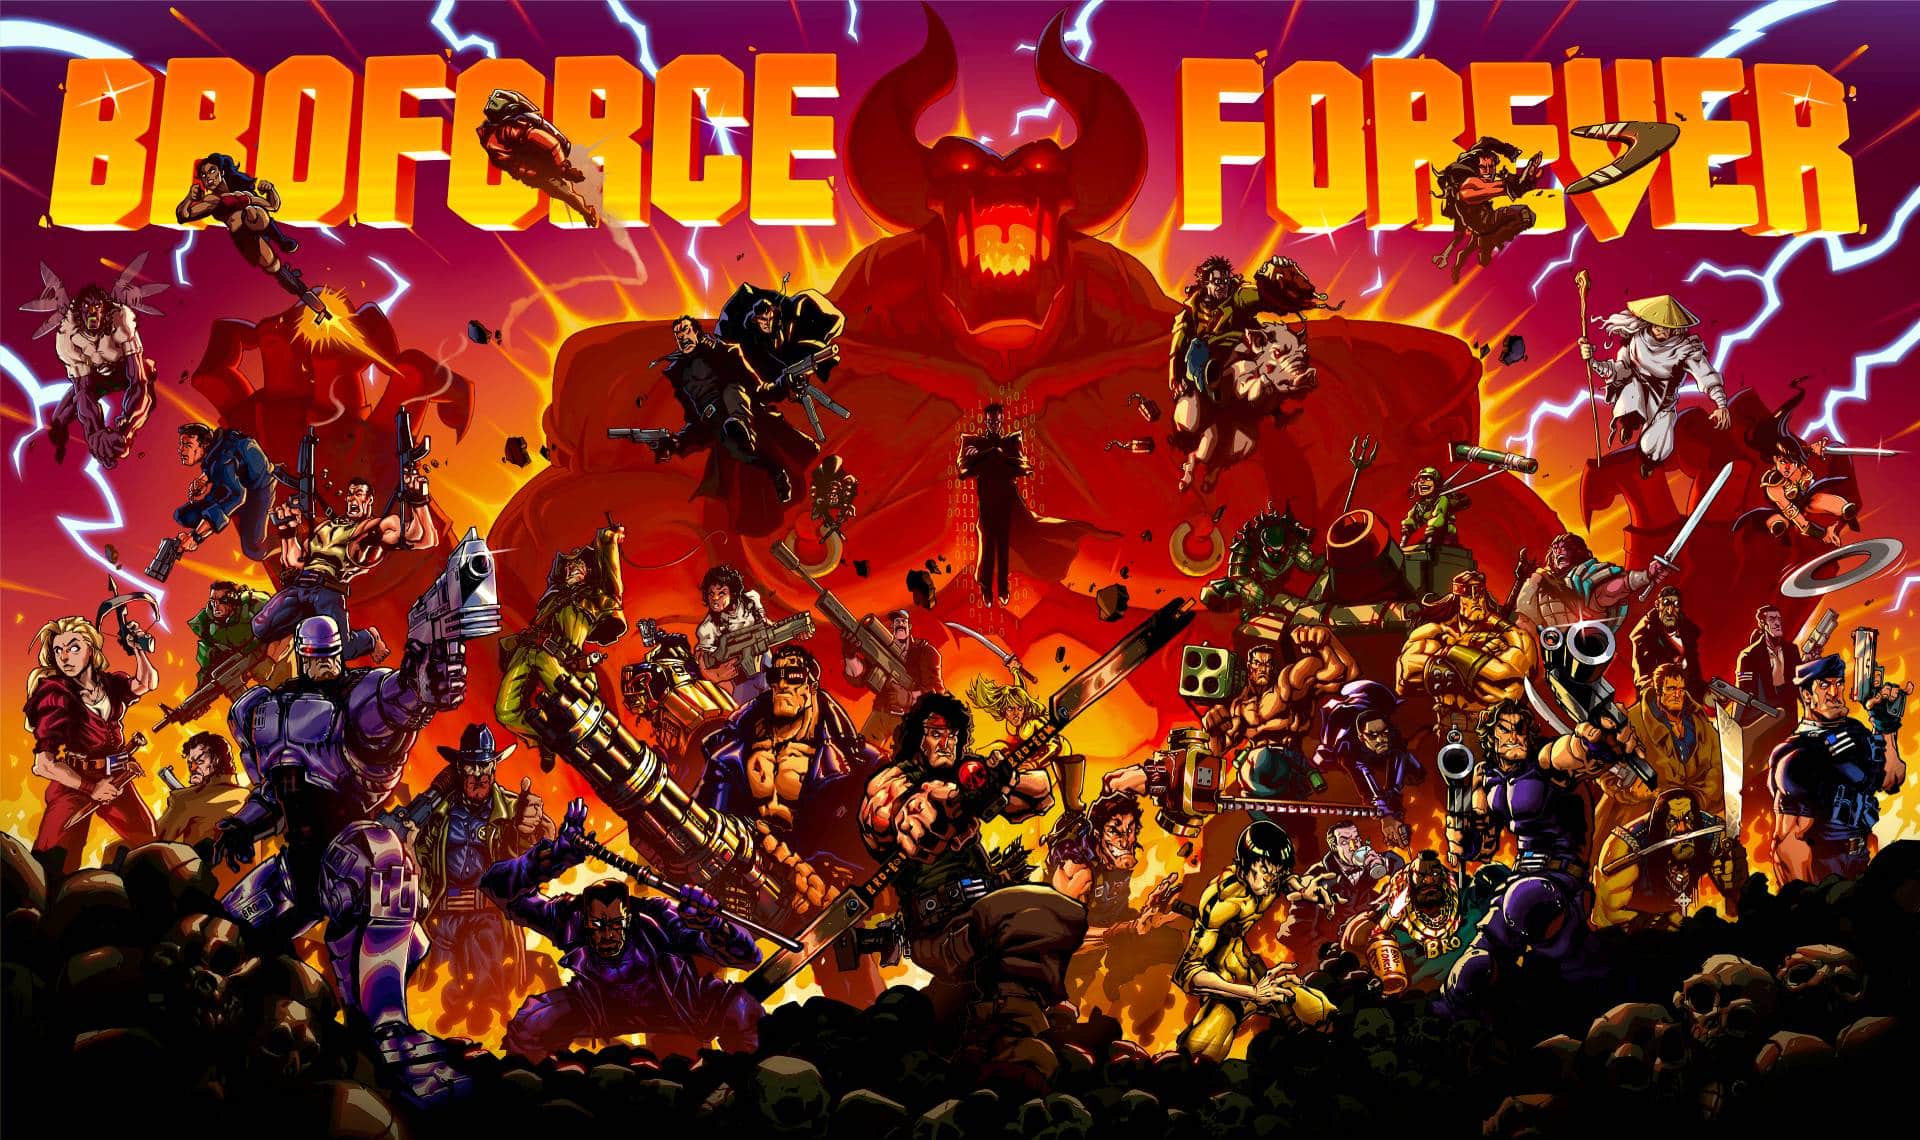 歡慶經典像素動作遊戲《Broforce》將在-8-月-8-日迎接重大改版